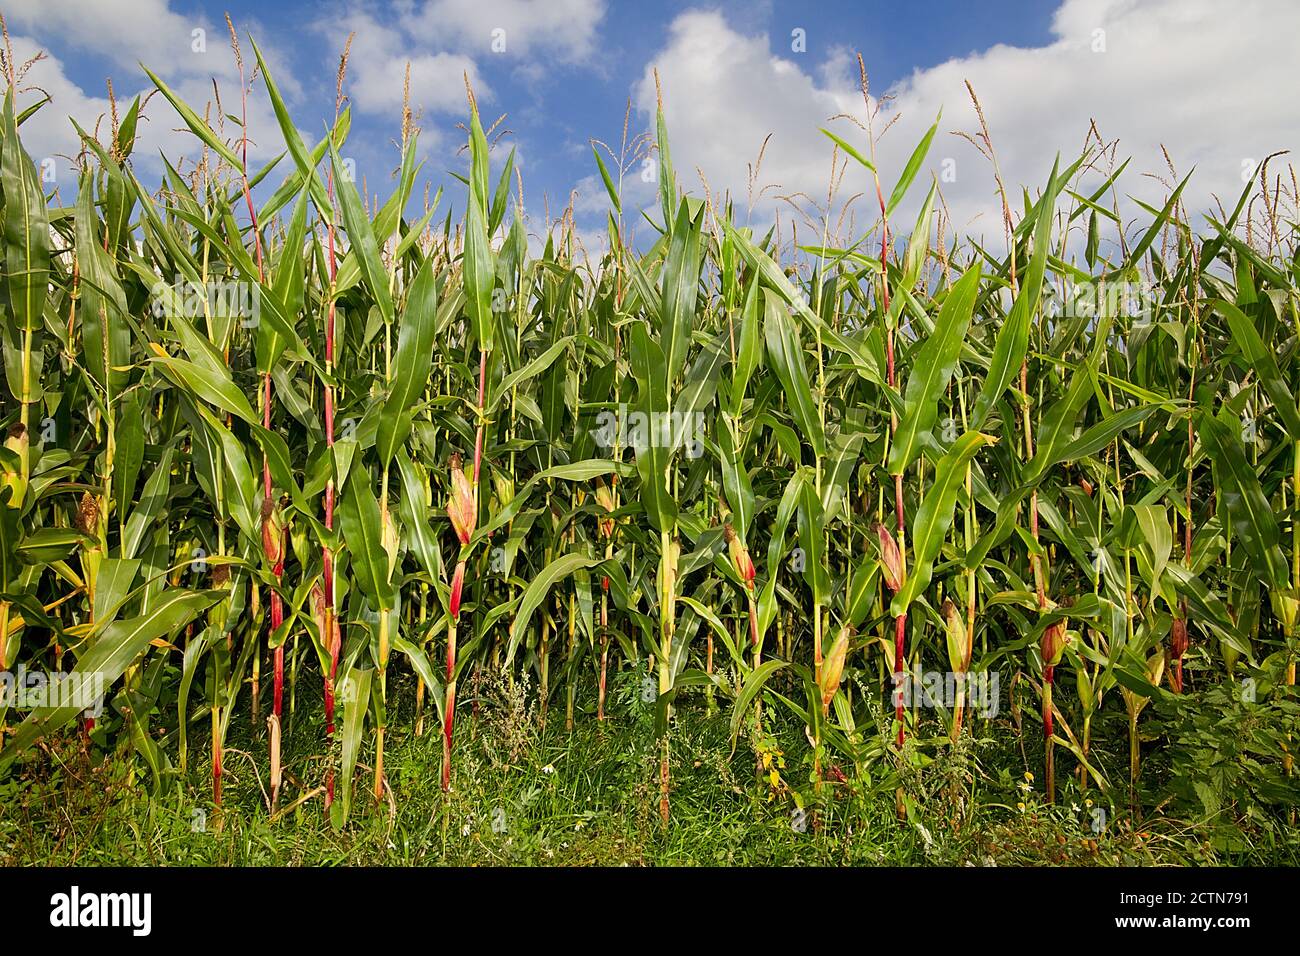 Récolte de maïs mûre sur un champ sous ciel bleu avec nuages blancs Banque D'Images